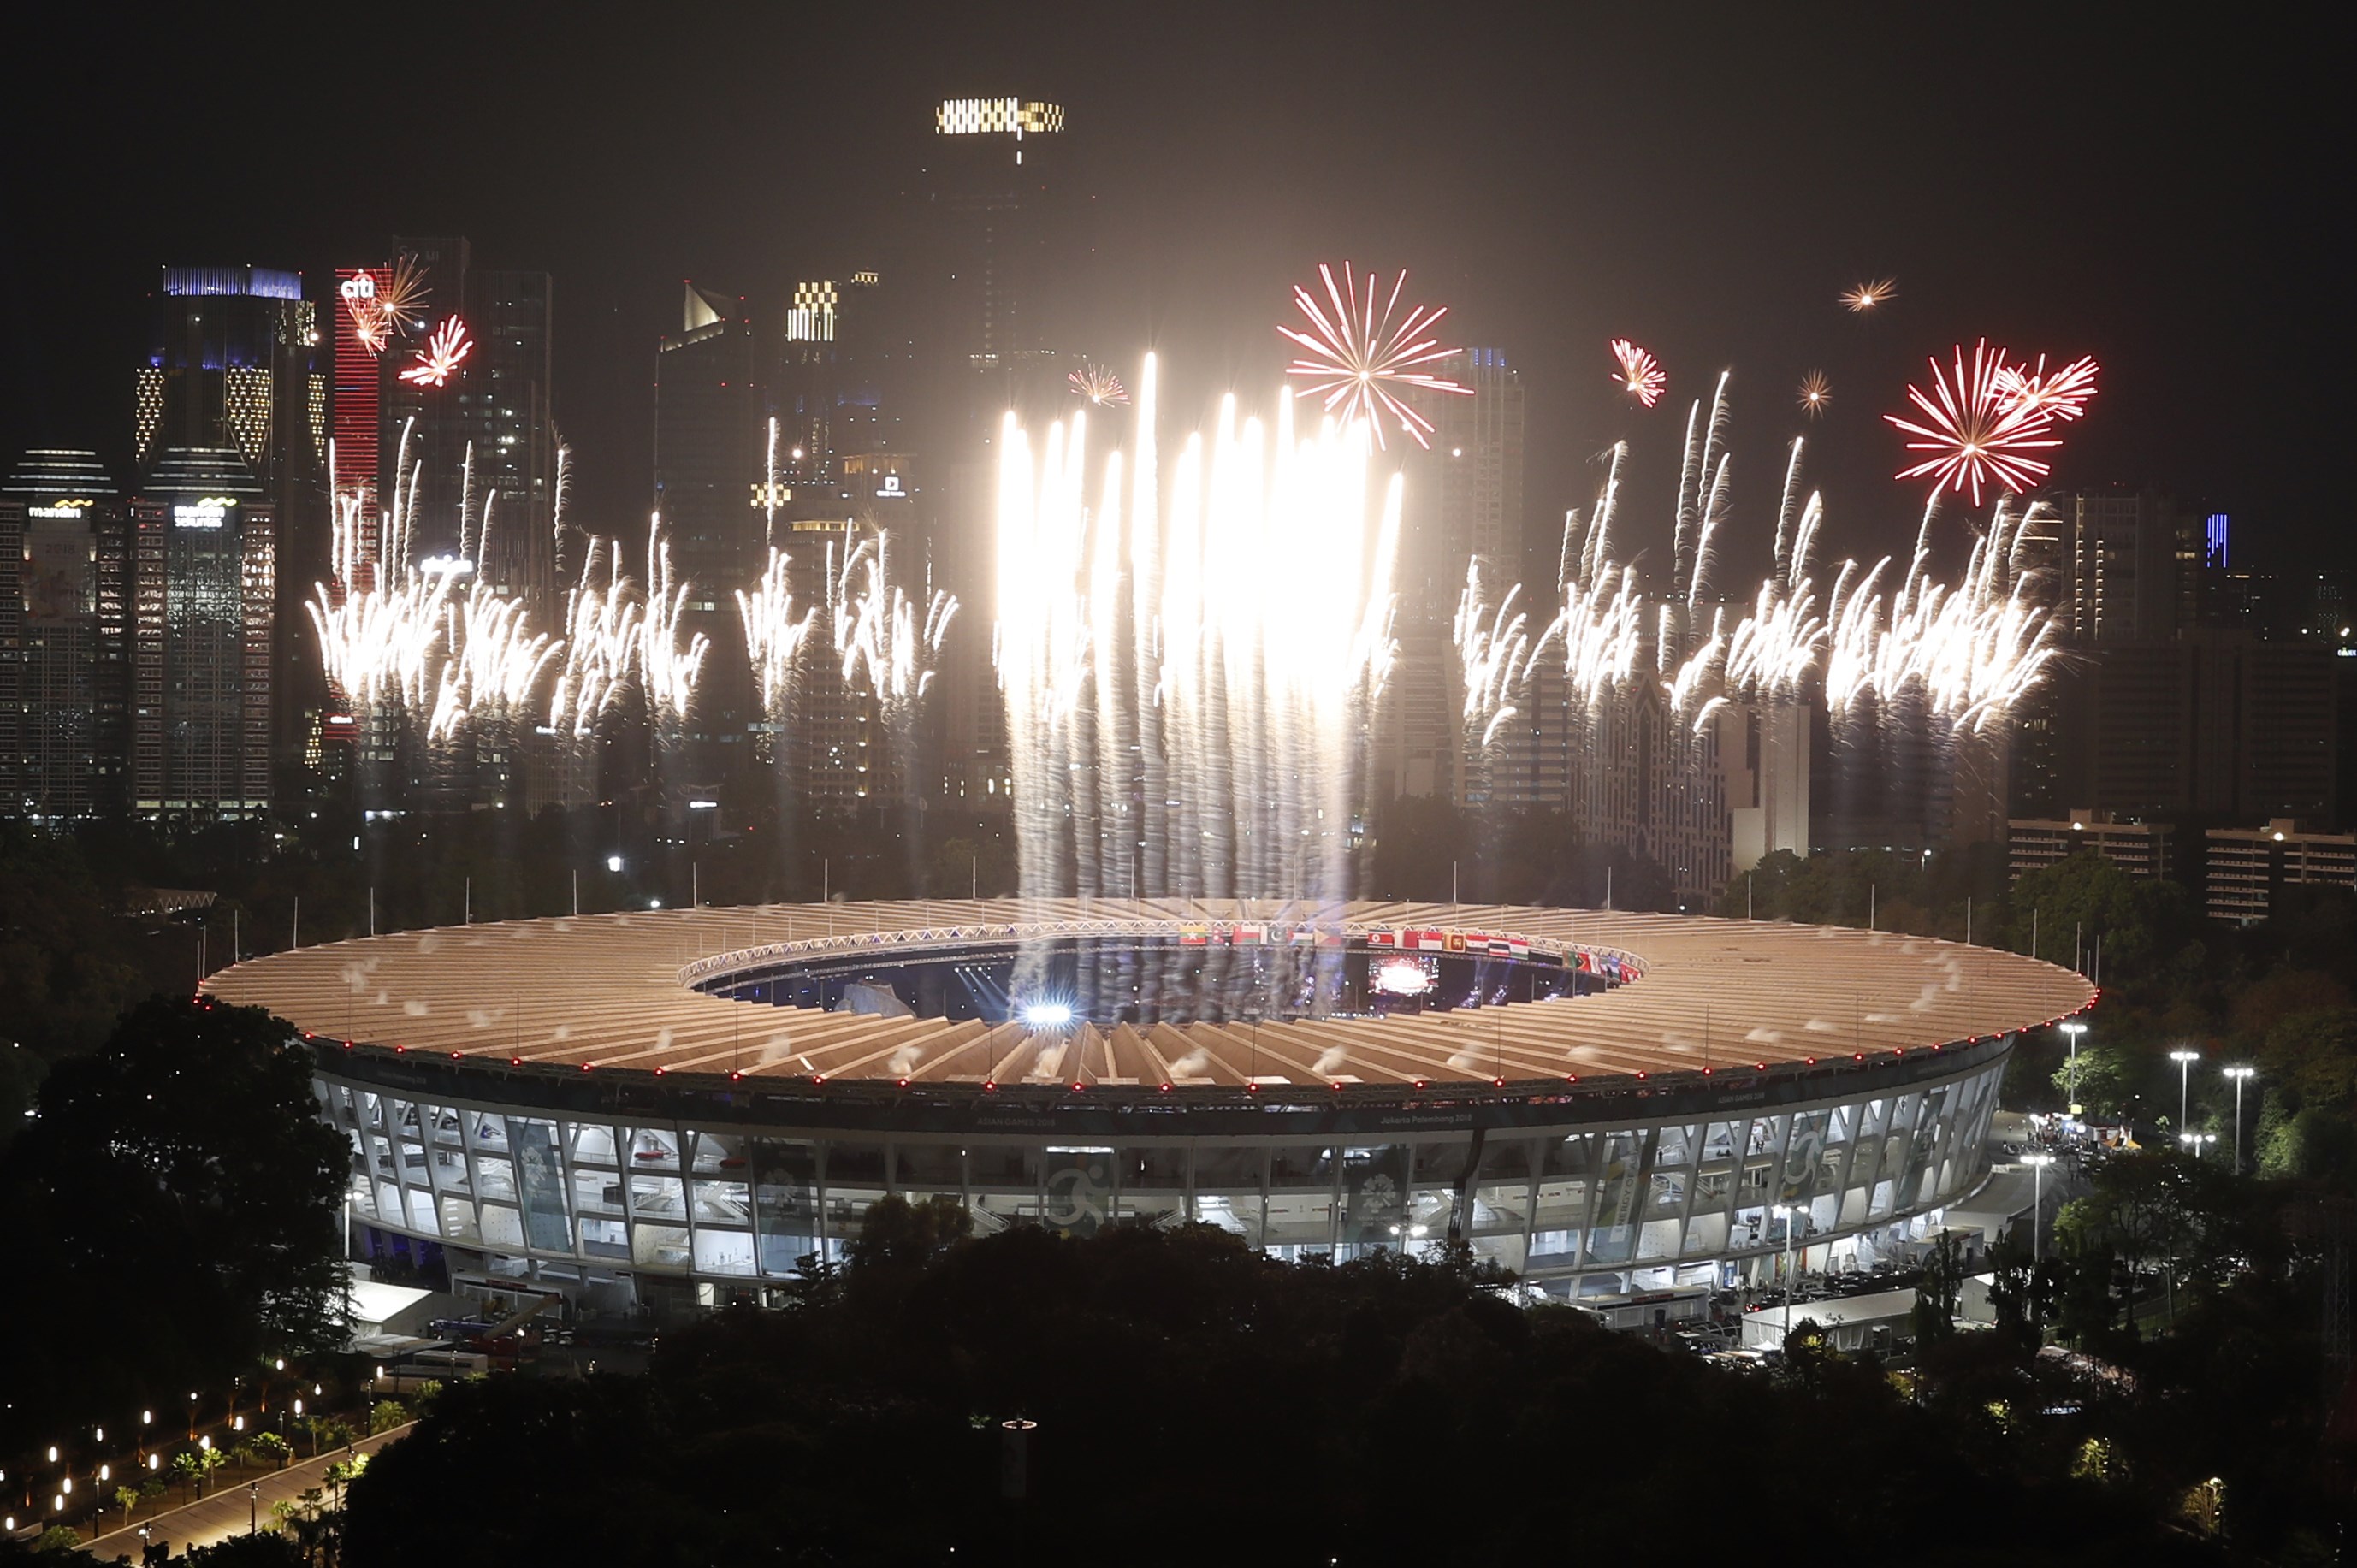 الألعاب النارية تهيمن على المشهد فى افتتاح دورة الألعاب الآسيوية